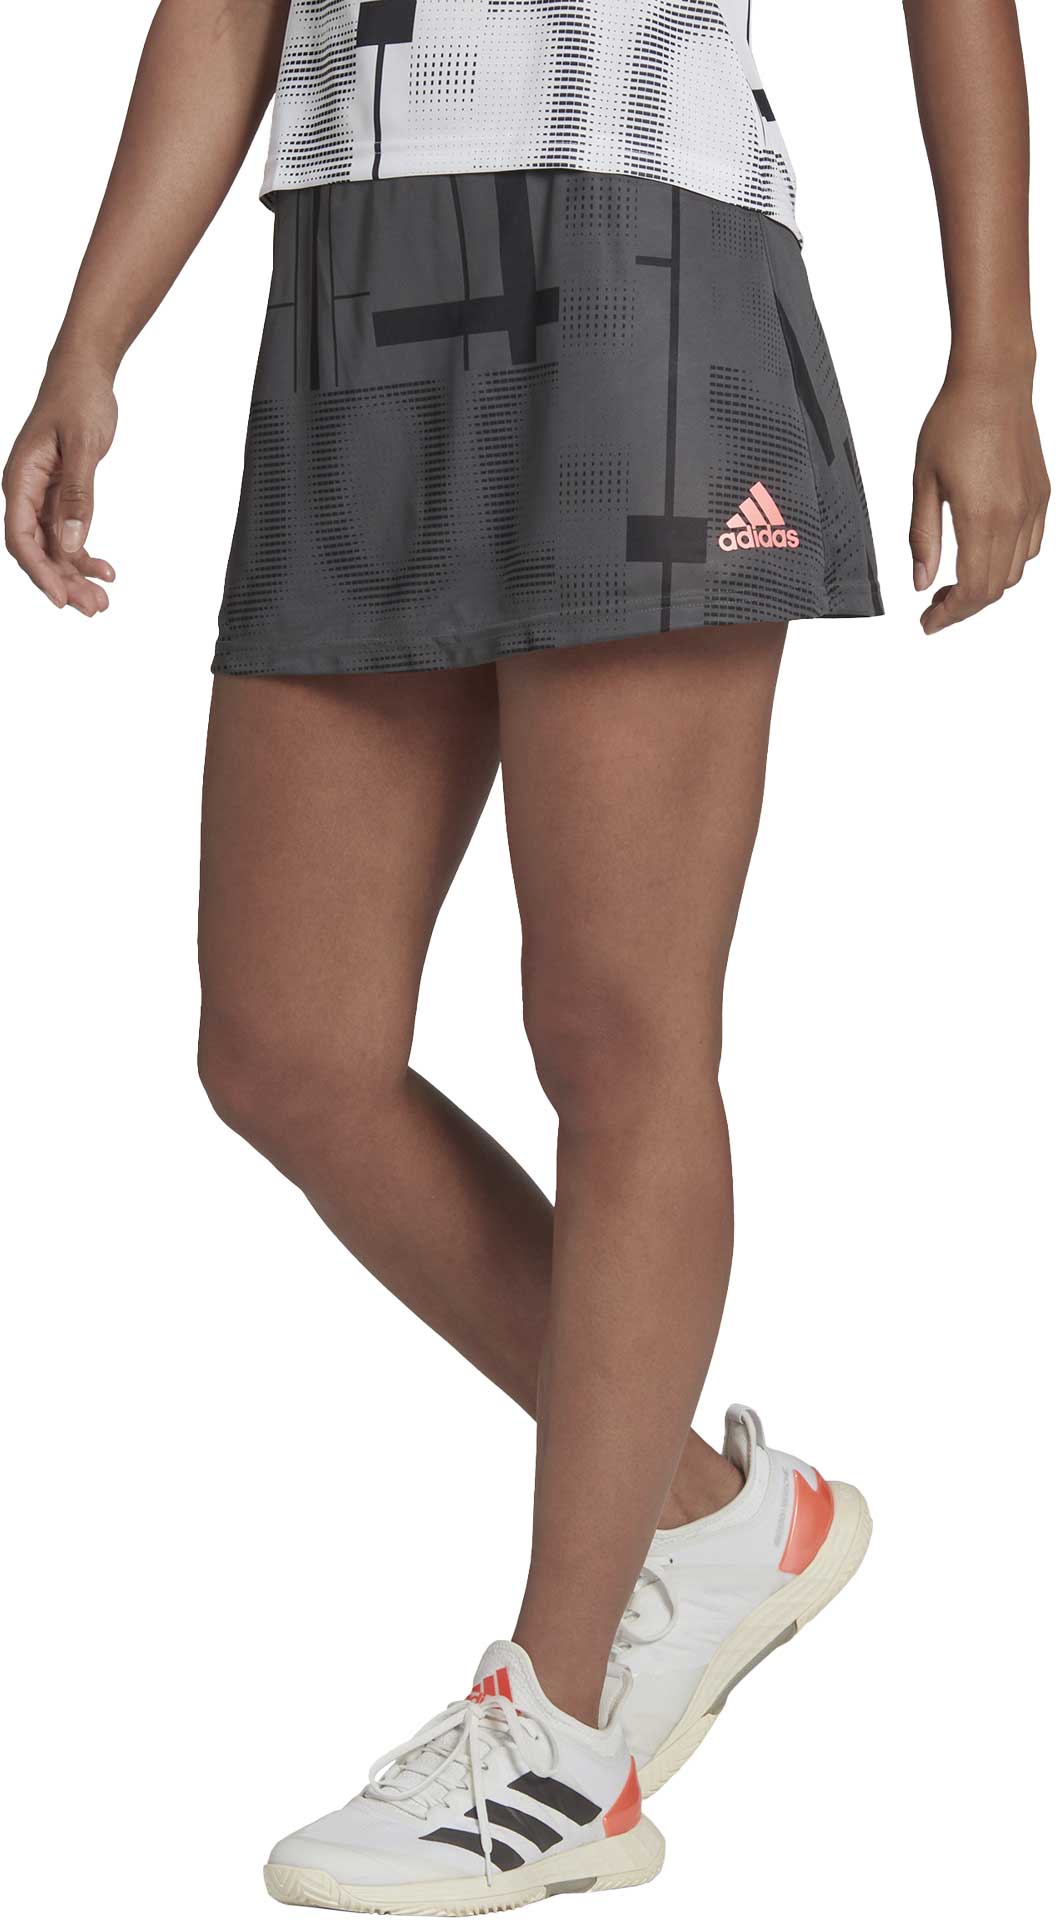 Dámská tenisová sukně